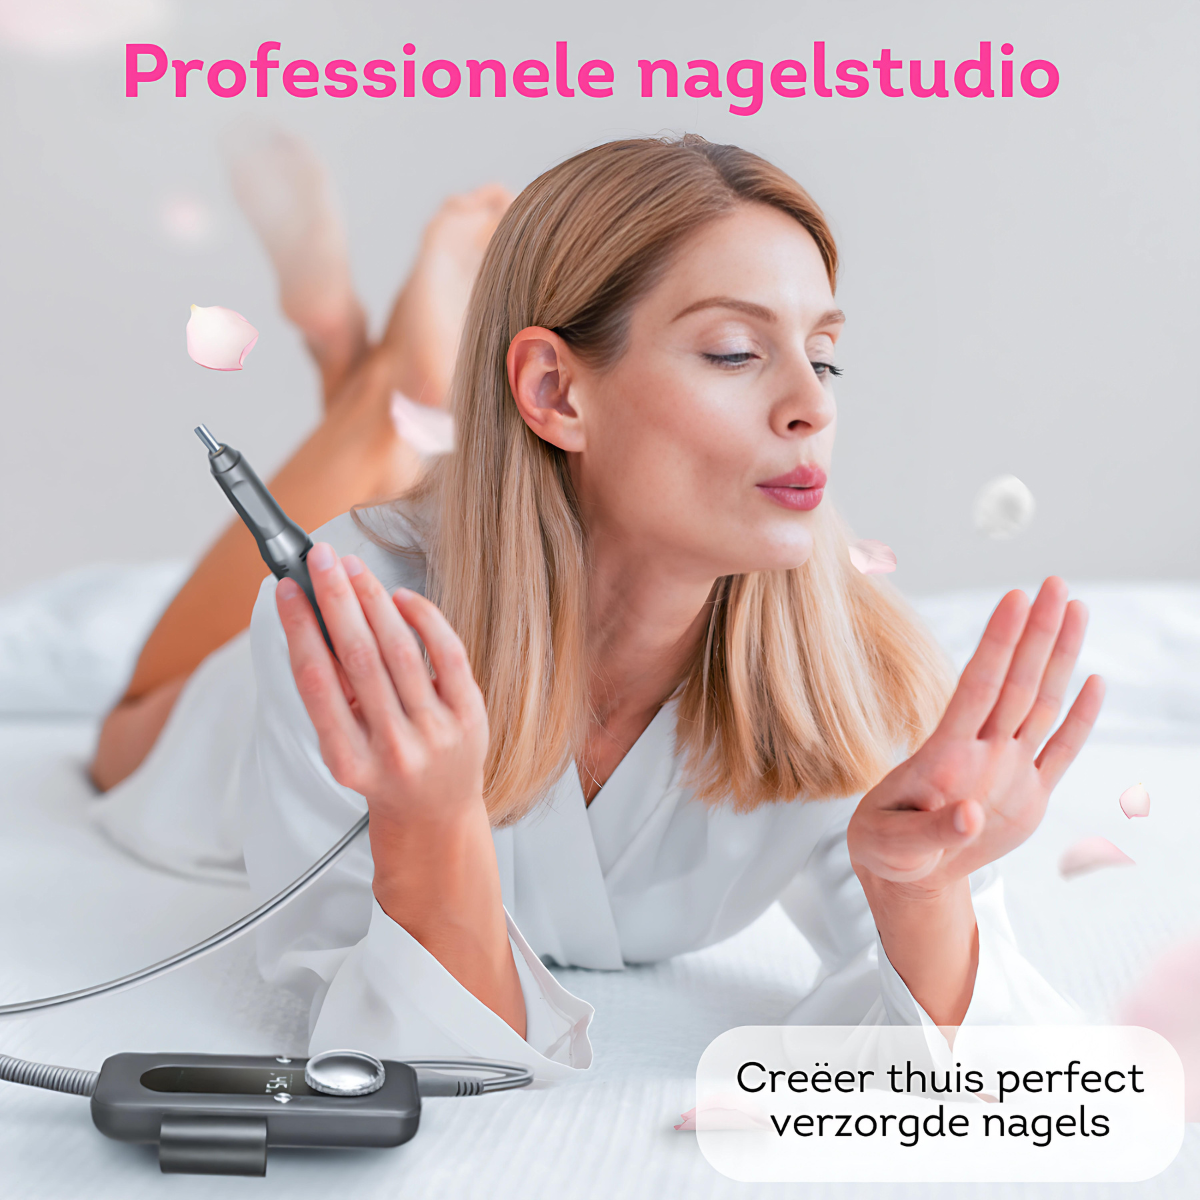 Creëer professionele nagelstudioresultaten thuis met onze nagelfrees. Perfectie binnen handbereik, waar je ook bent!